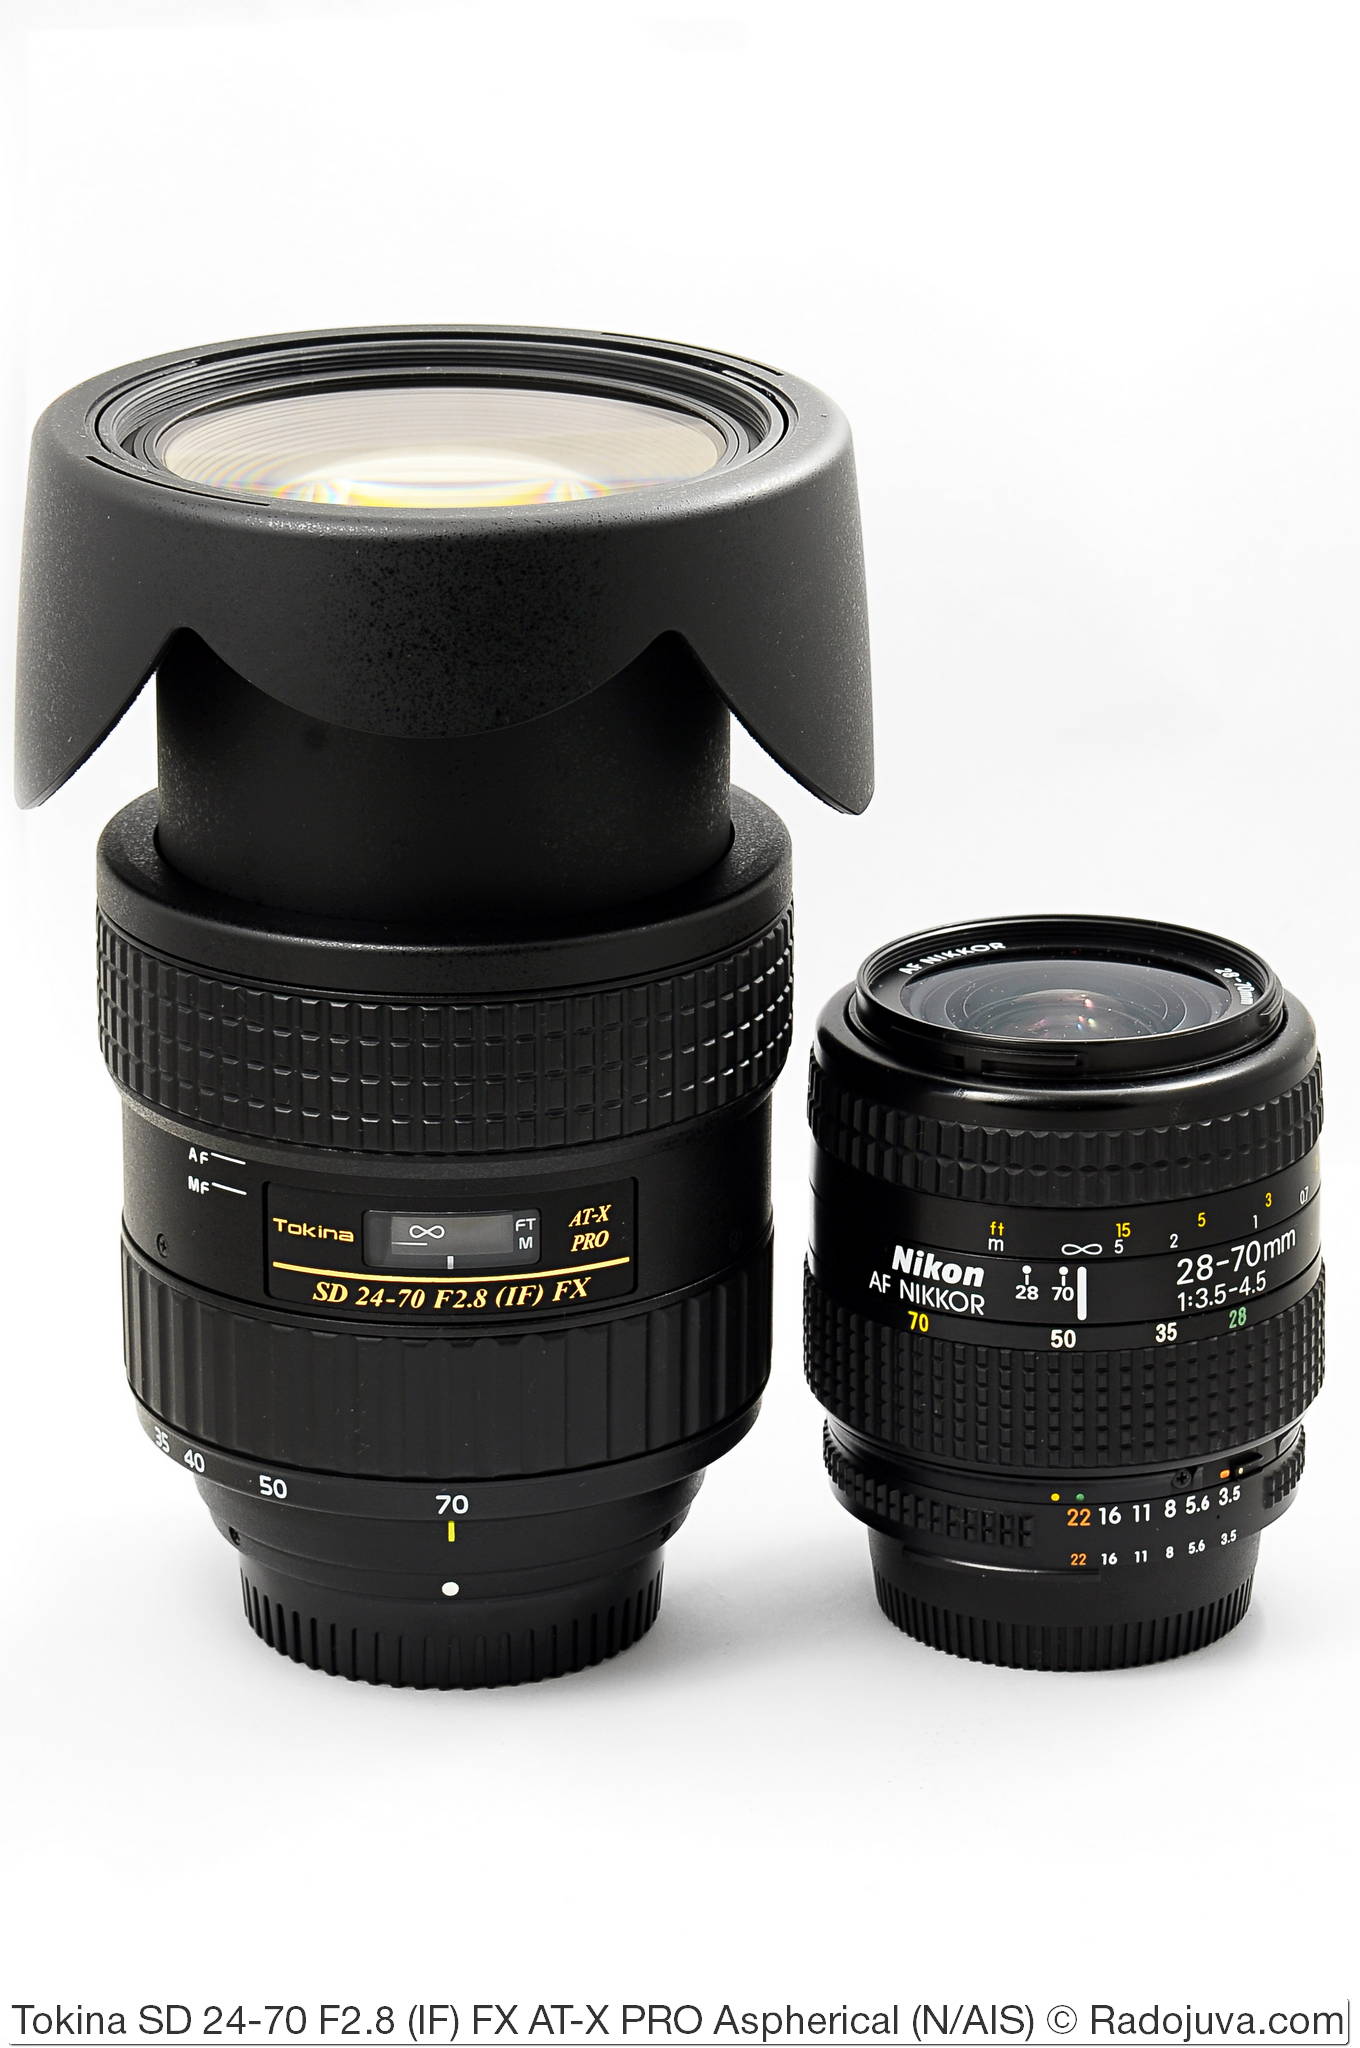 Dimensiones Tokina SD 24-70 F2.8 (IF) FX AT-X PRO Asférico y Nikon AF Nikkor 28-70mm 1:3.5-4.5 (MKI)